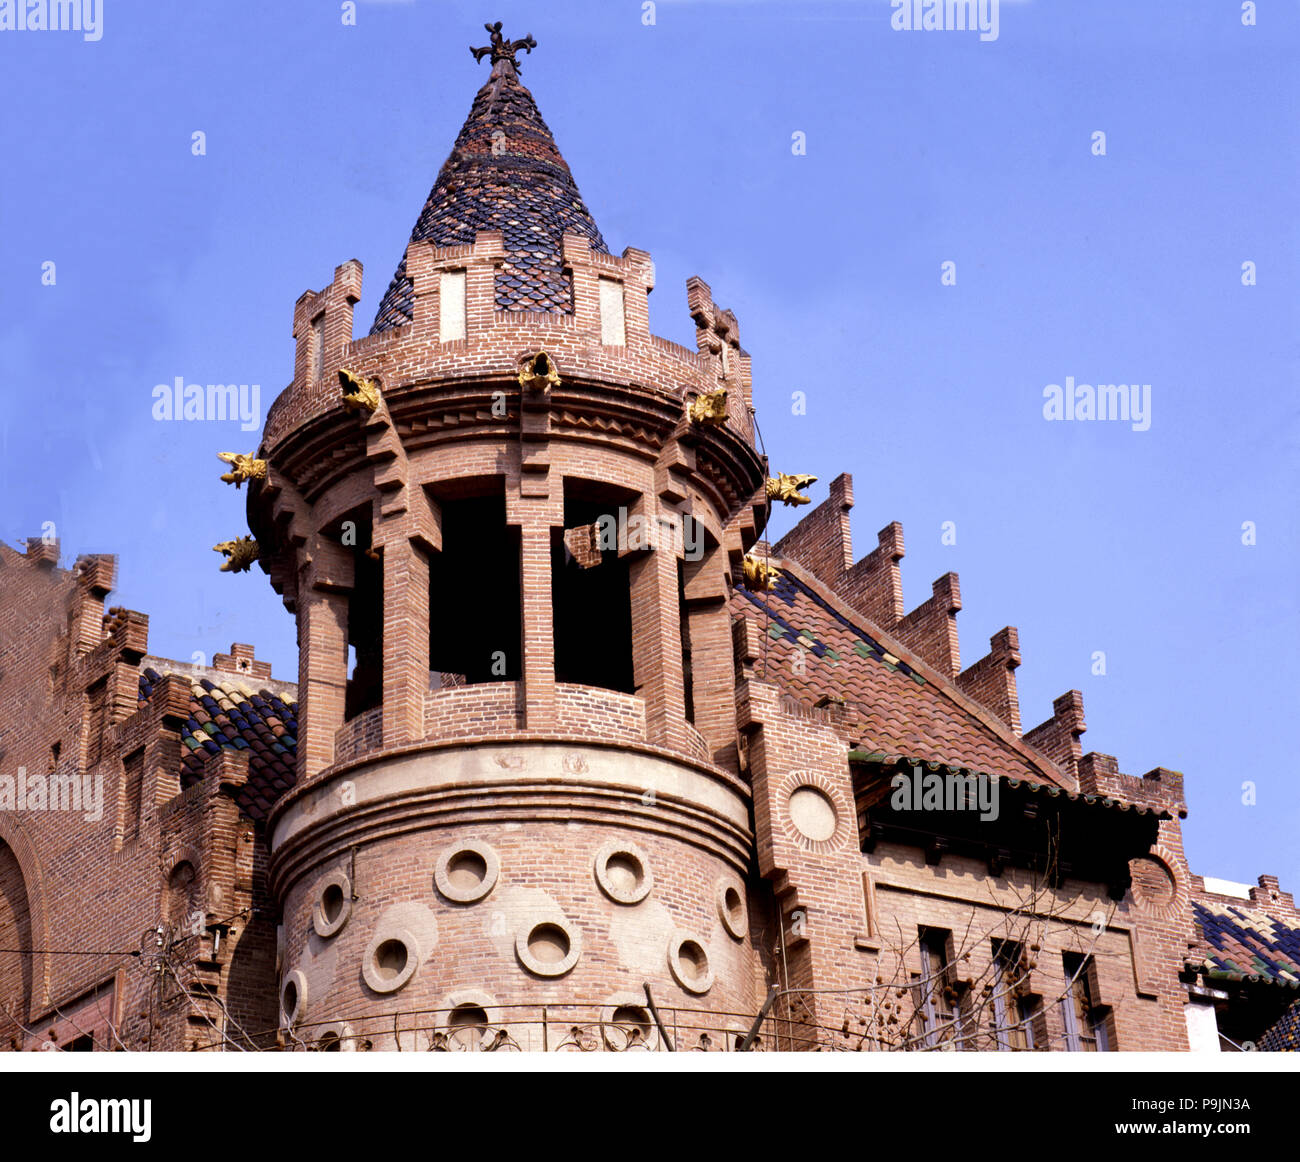 Dettaglio della Torre di Cala Bianca a Canet de Mar, edificio dall'architetto Lluis Domenech i Montaner. Foto Stock